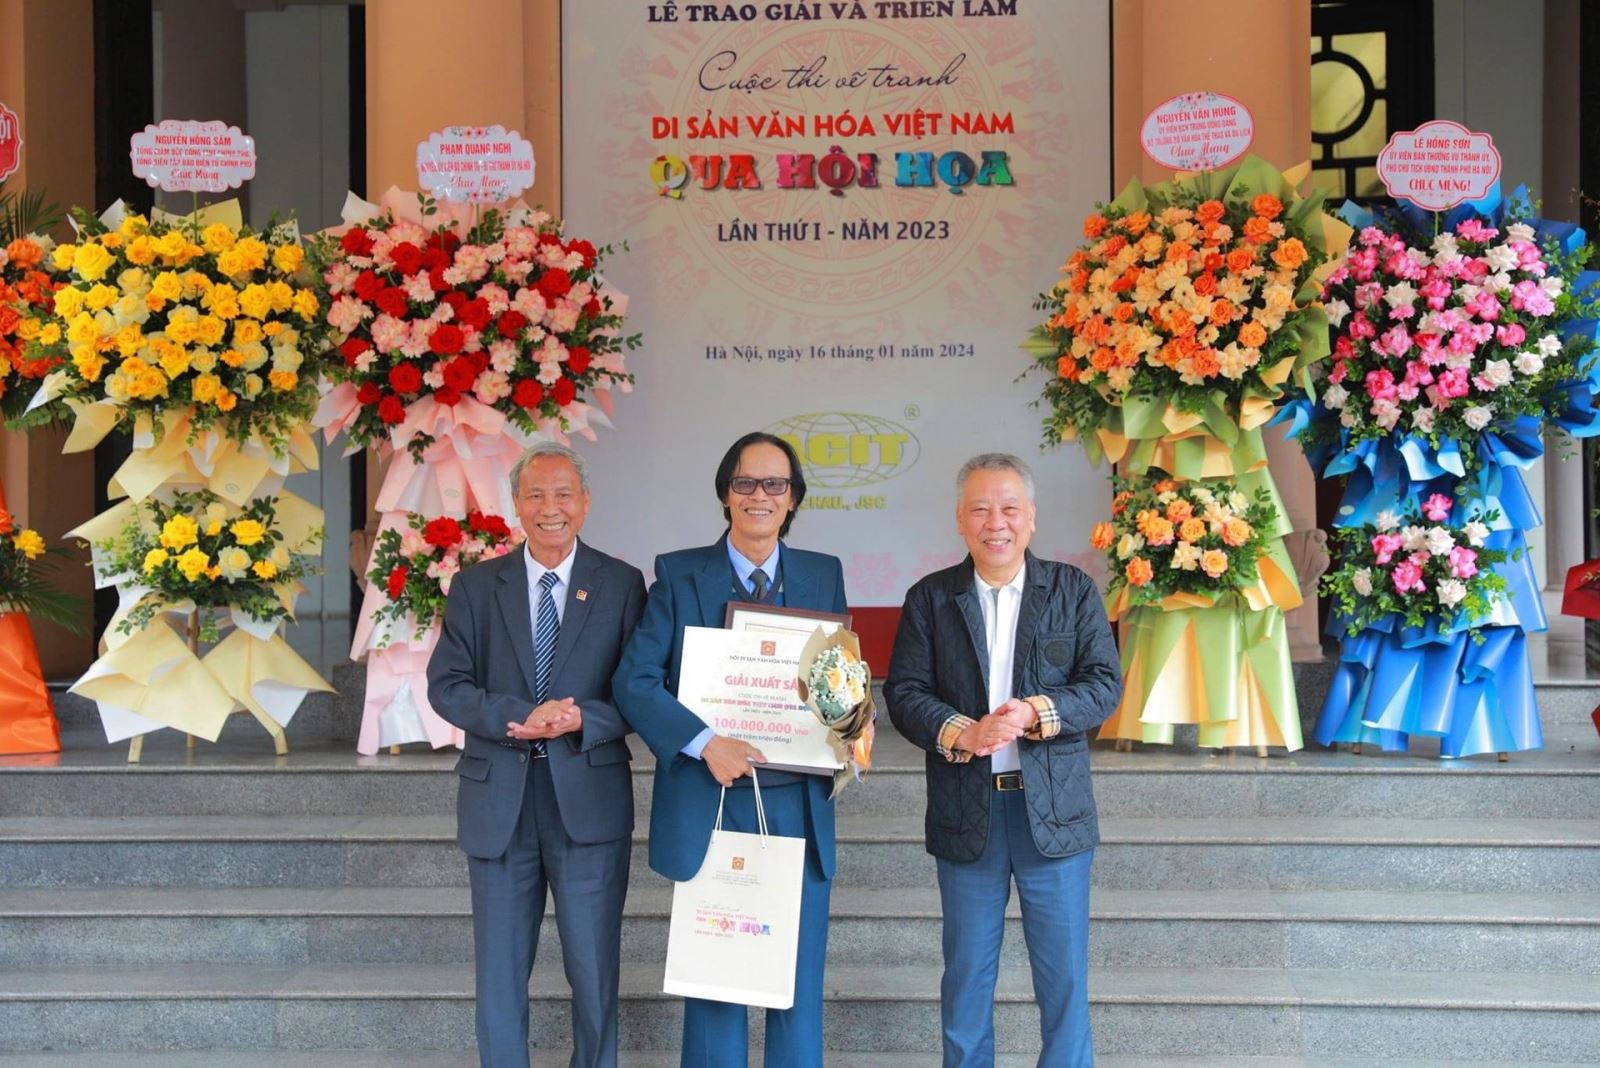 Lễ trao giải và khai mạc Cuộc thi vẽ tranh Di sản văn hoá Việt Nam qua hội hoạ lần thứ I - năm 2023